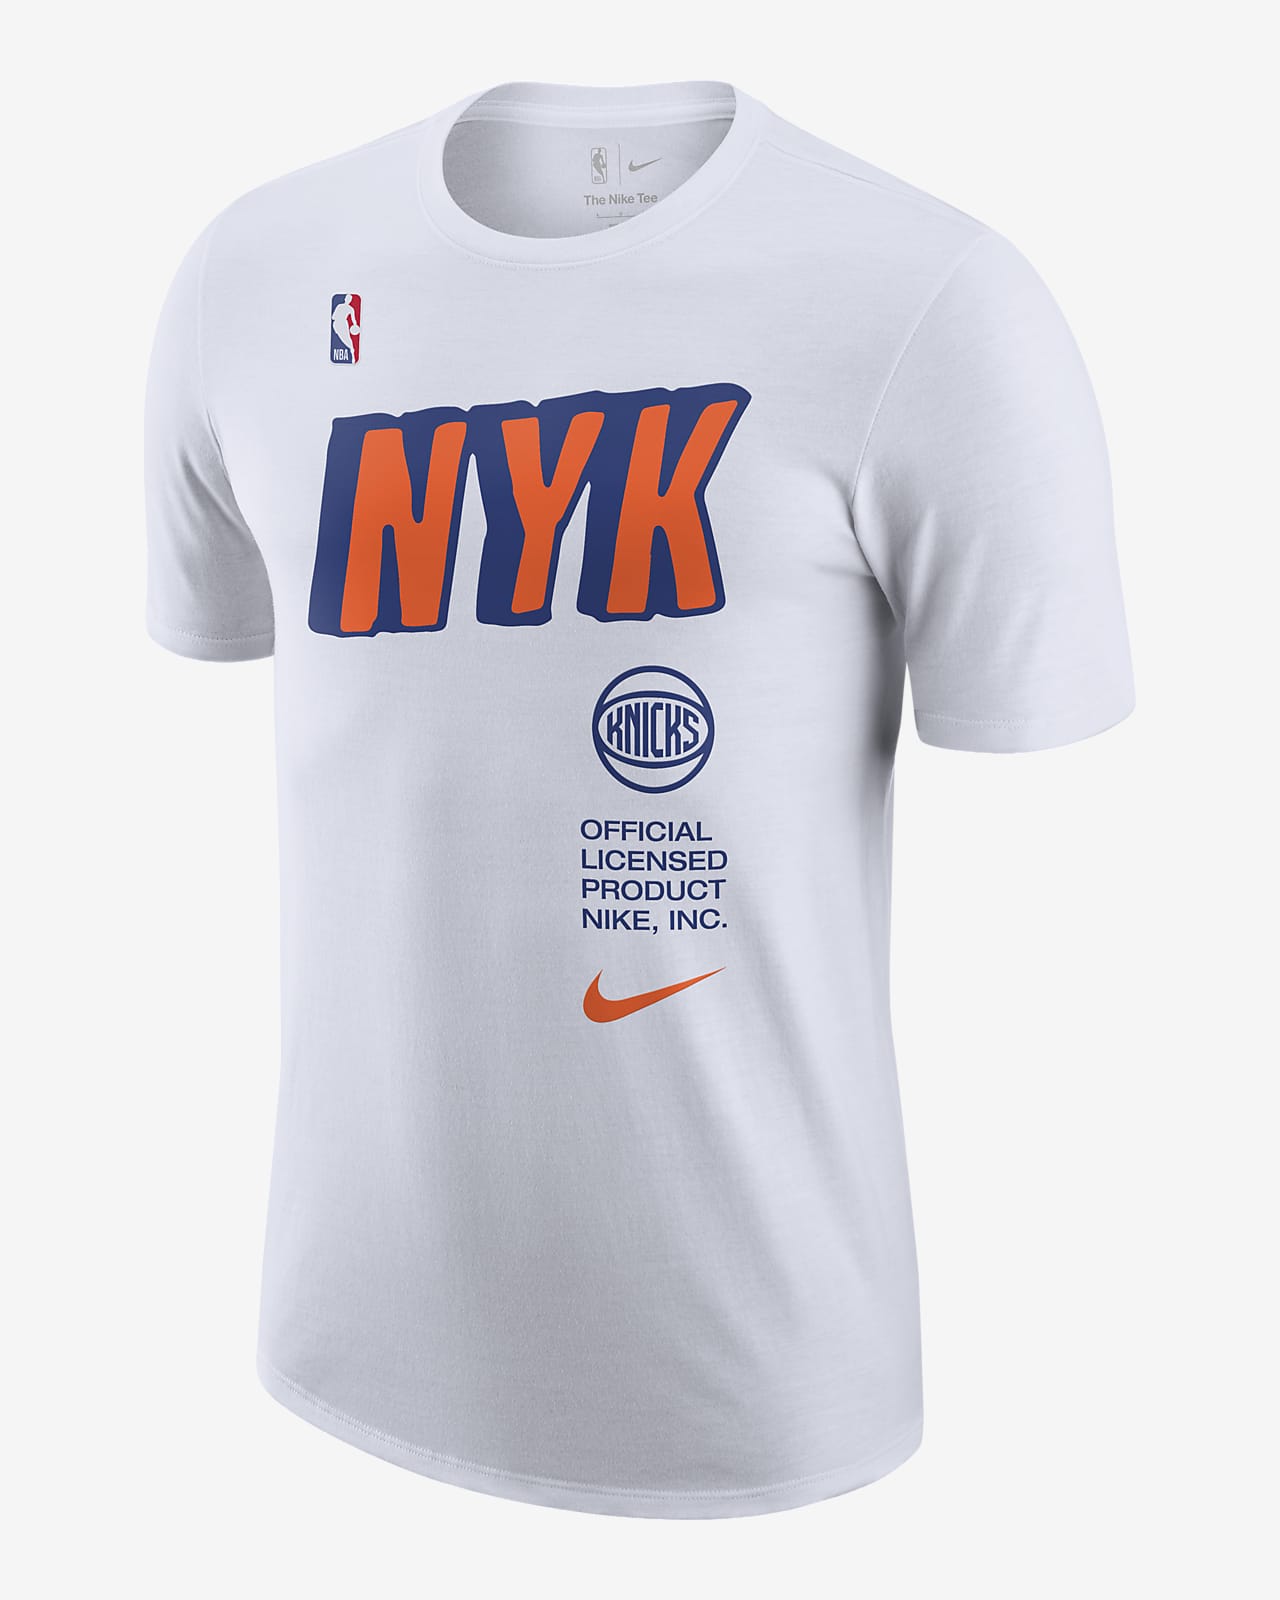 Playera NBA para hombre New York Knicks. Nike.com